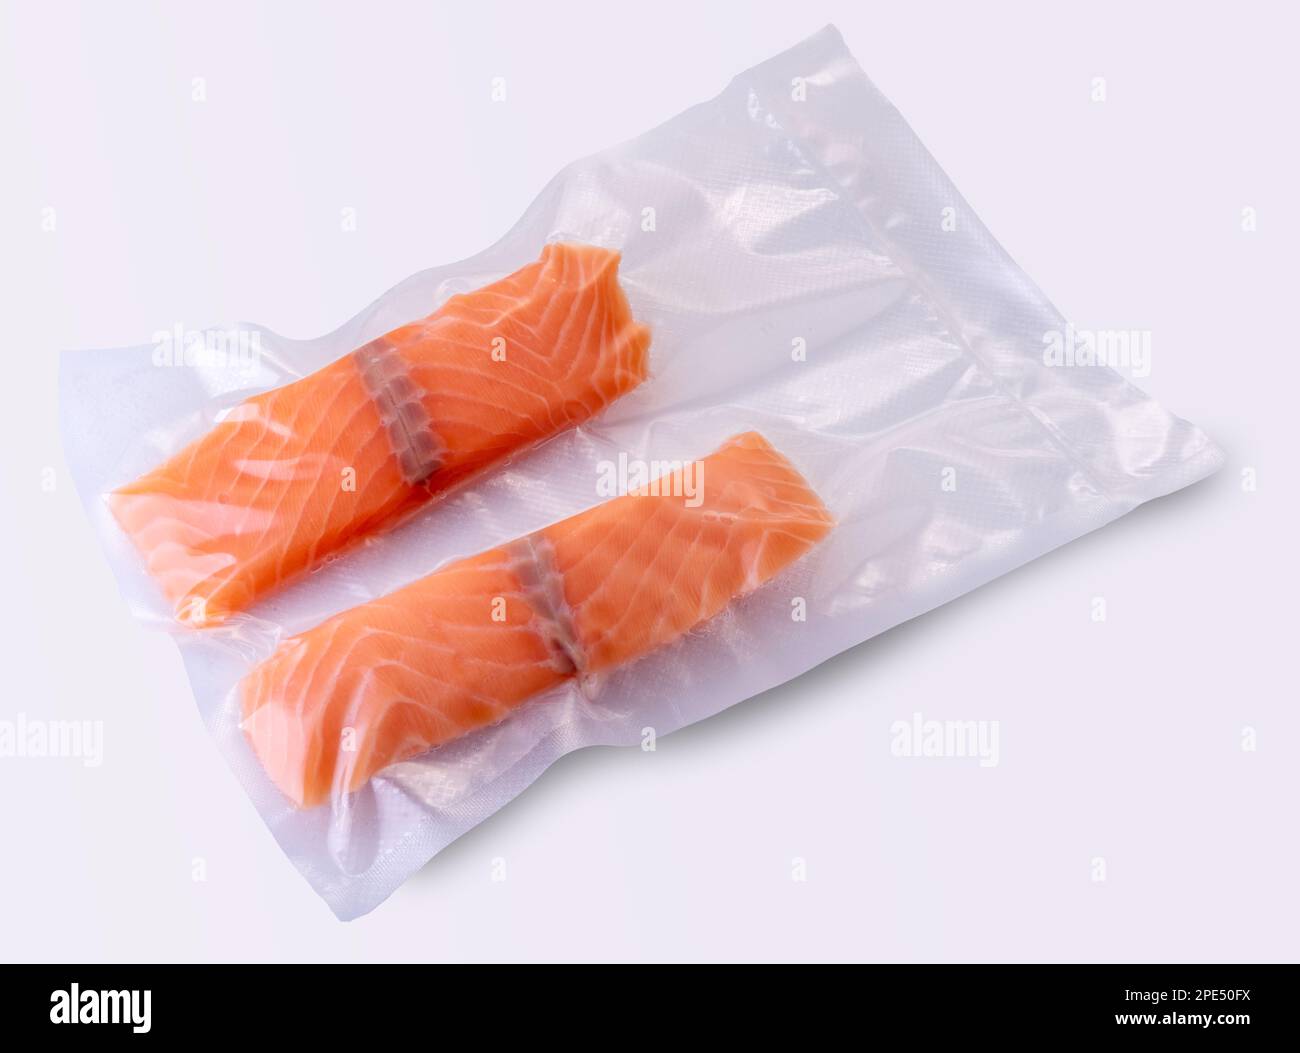 Lachsscheiben in vakuumverpackter Verpackung, versiegelt für Sous-Vide-Kochen auf weißem Hintergrund Stockfoto